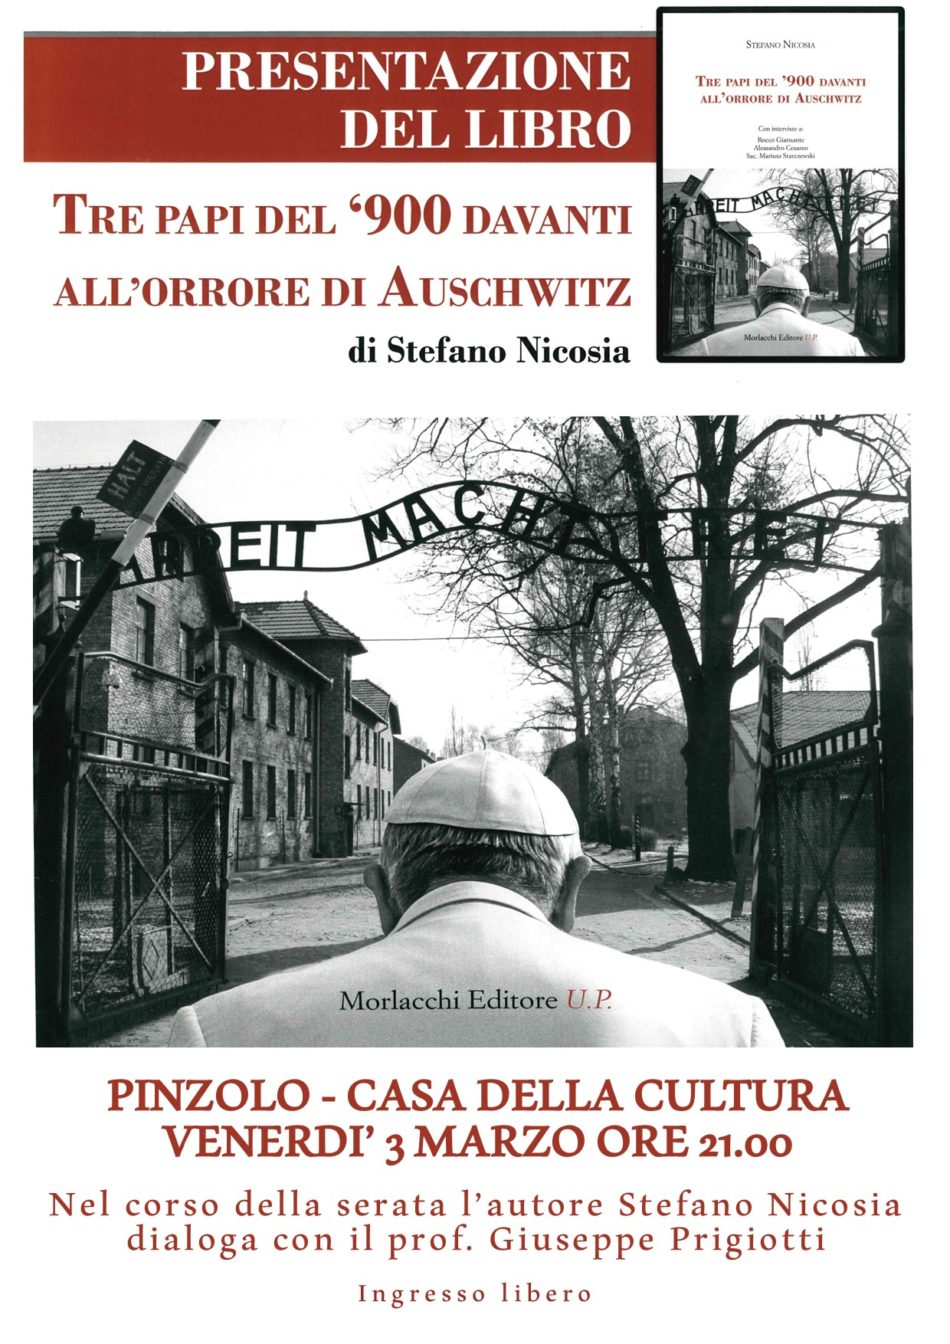 Venerdì 3 marzo ore 21:00 Pinzolo Casa della Cultura : Presentazione del libro “Tre Papi del ‘900 davanti all’orrore di Auschwitz” di Stefano Nicosia